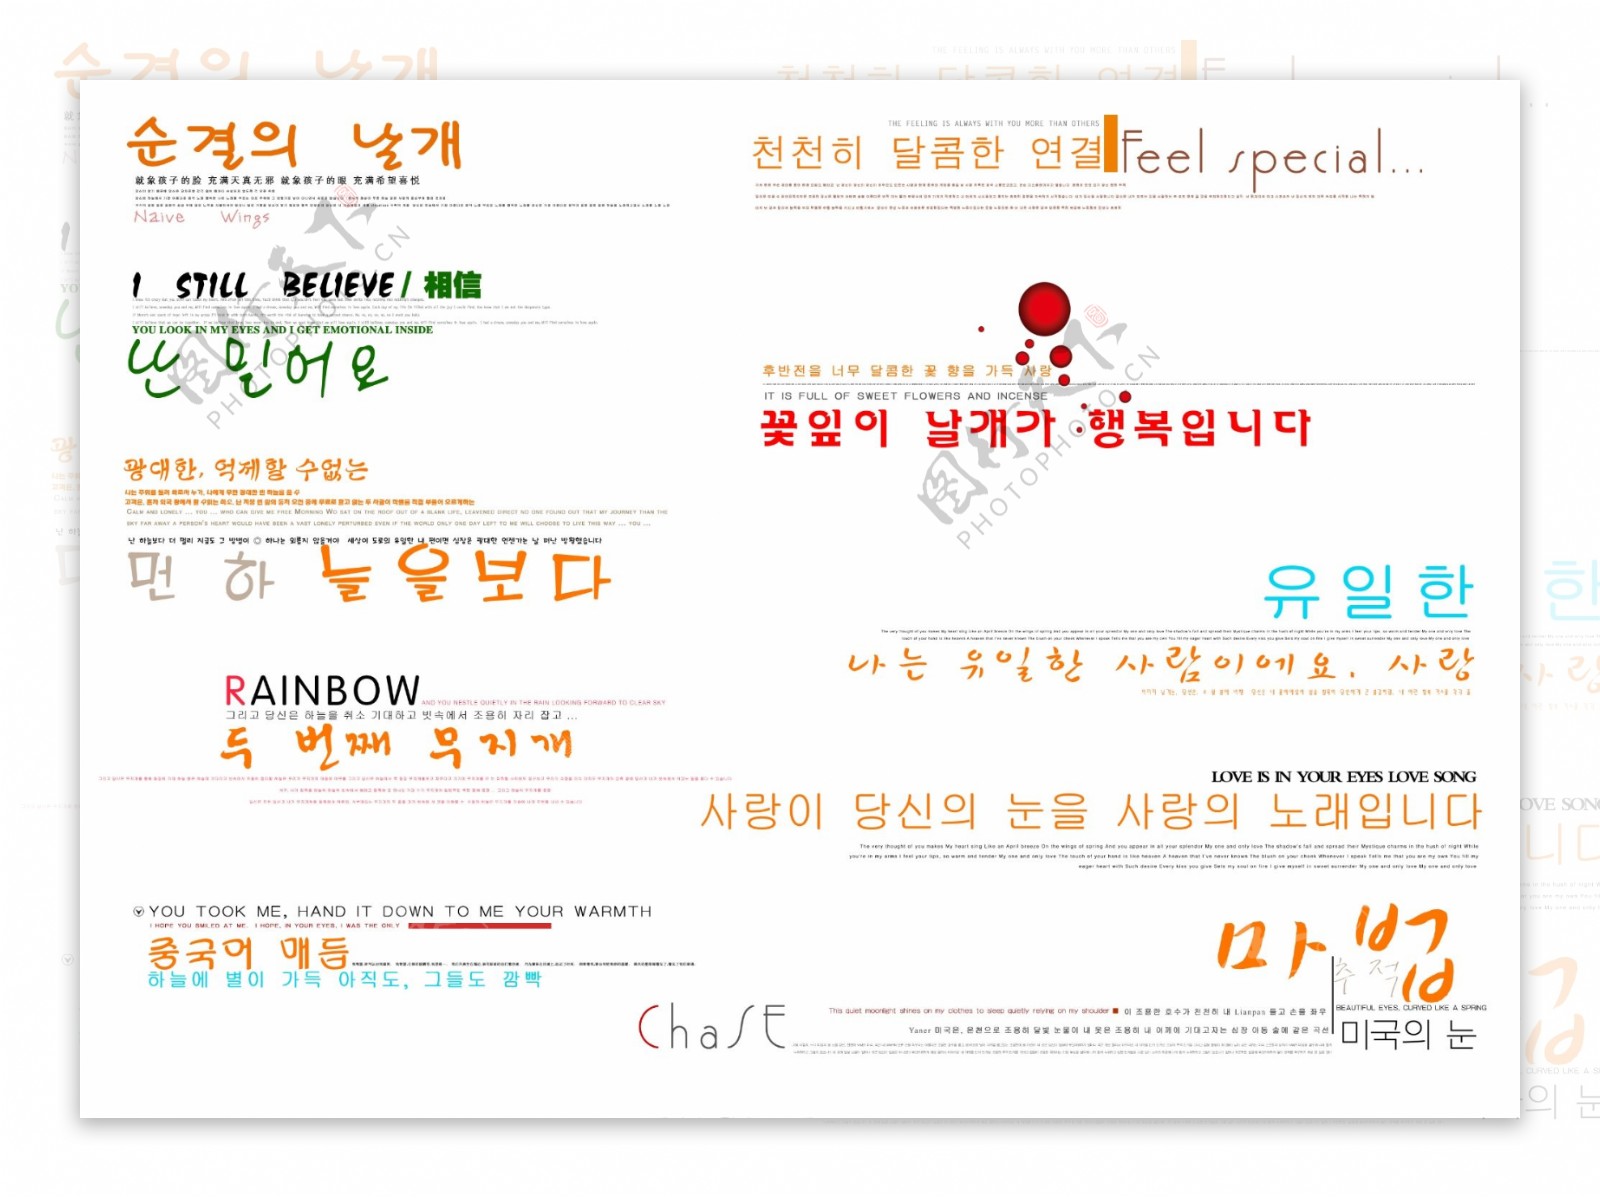 影楼排版韩国字体艺术字PSD分层源文件